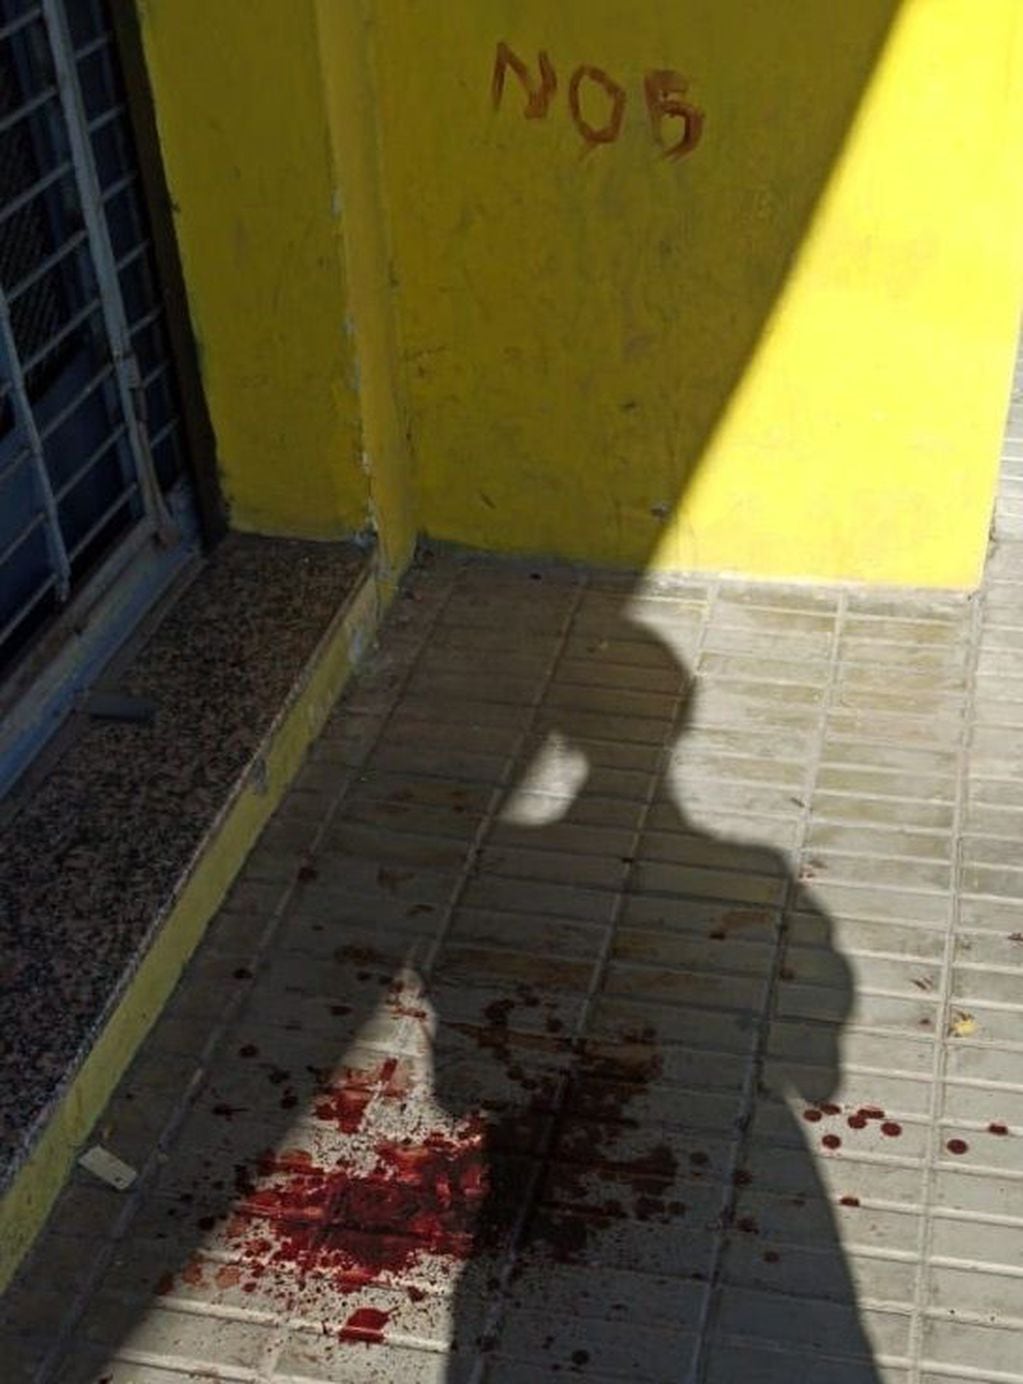 El ladrón escribió con su propia sangre la sigla "NOB" tras romper una vidriera. (Radio 2)